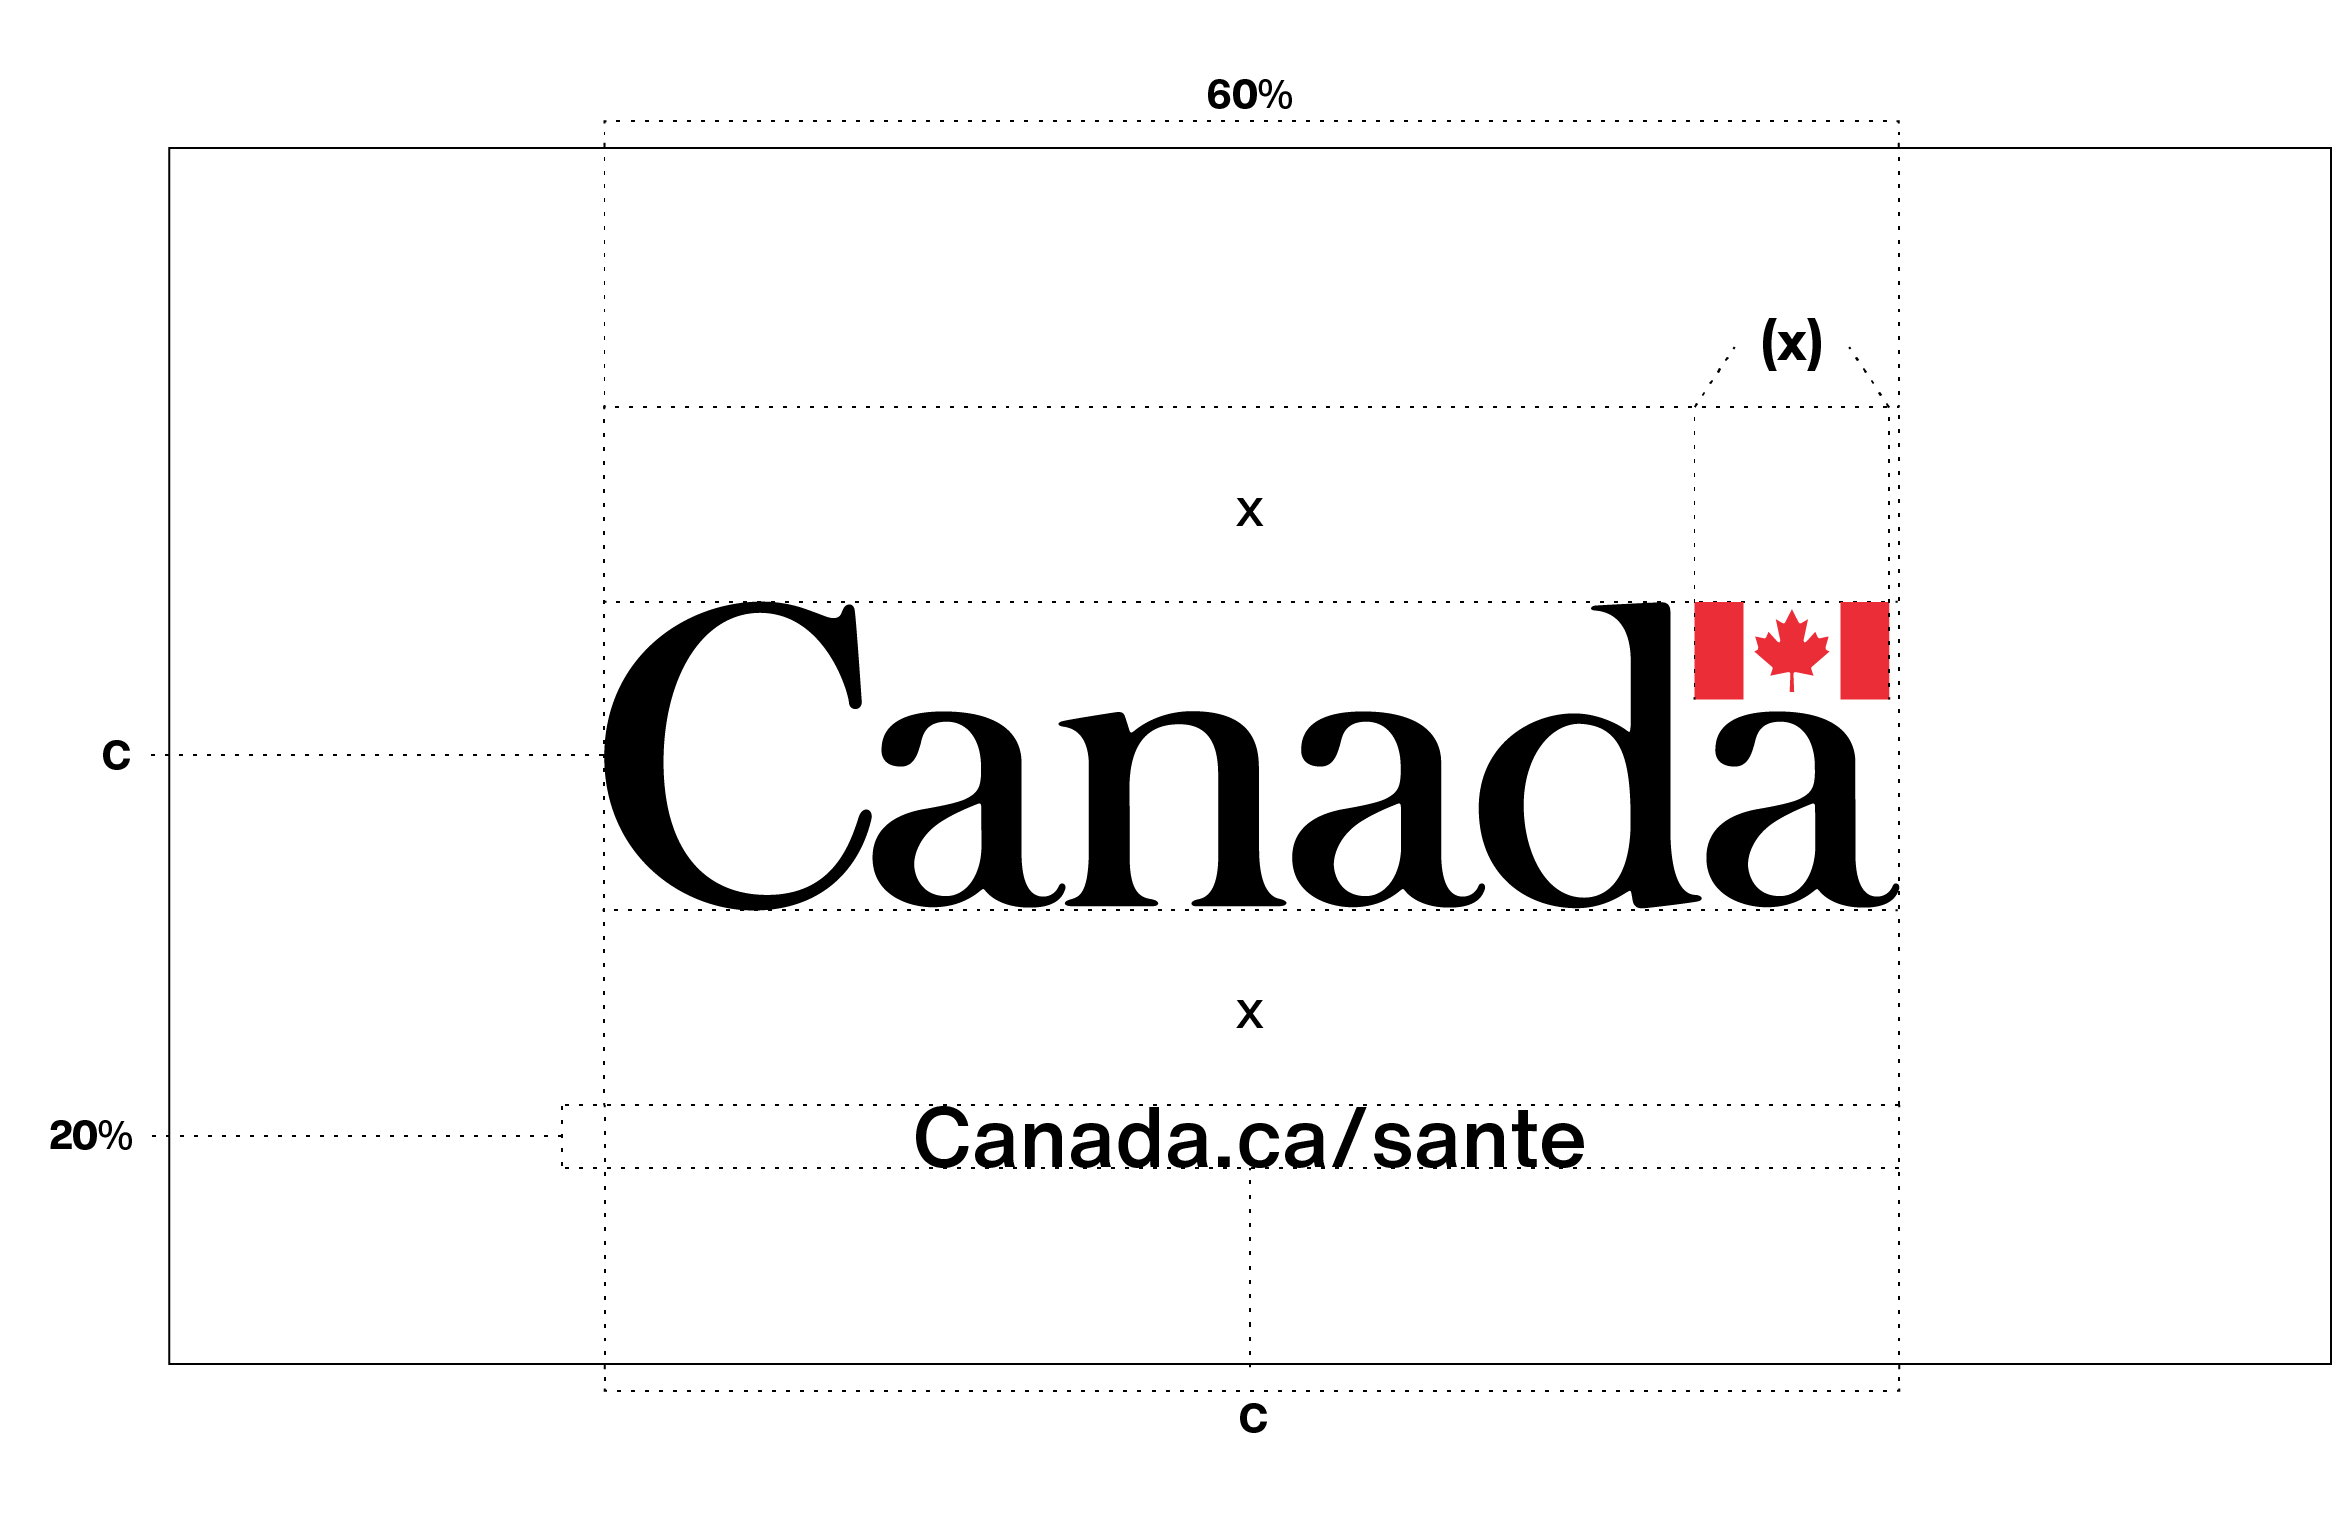 Exigences en matière de placement du mot-symbole « Canada » avec un message supplémentaire (en l’occurrence, une URL) au dernier écran d’une publicité vidéo, comme l’explique le texte ci dessus.